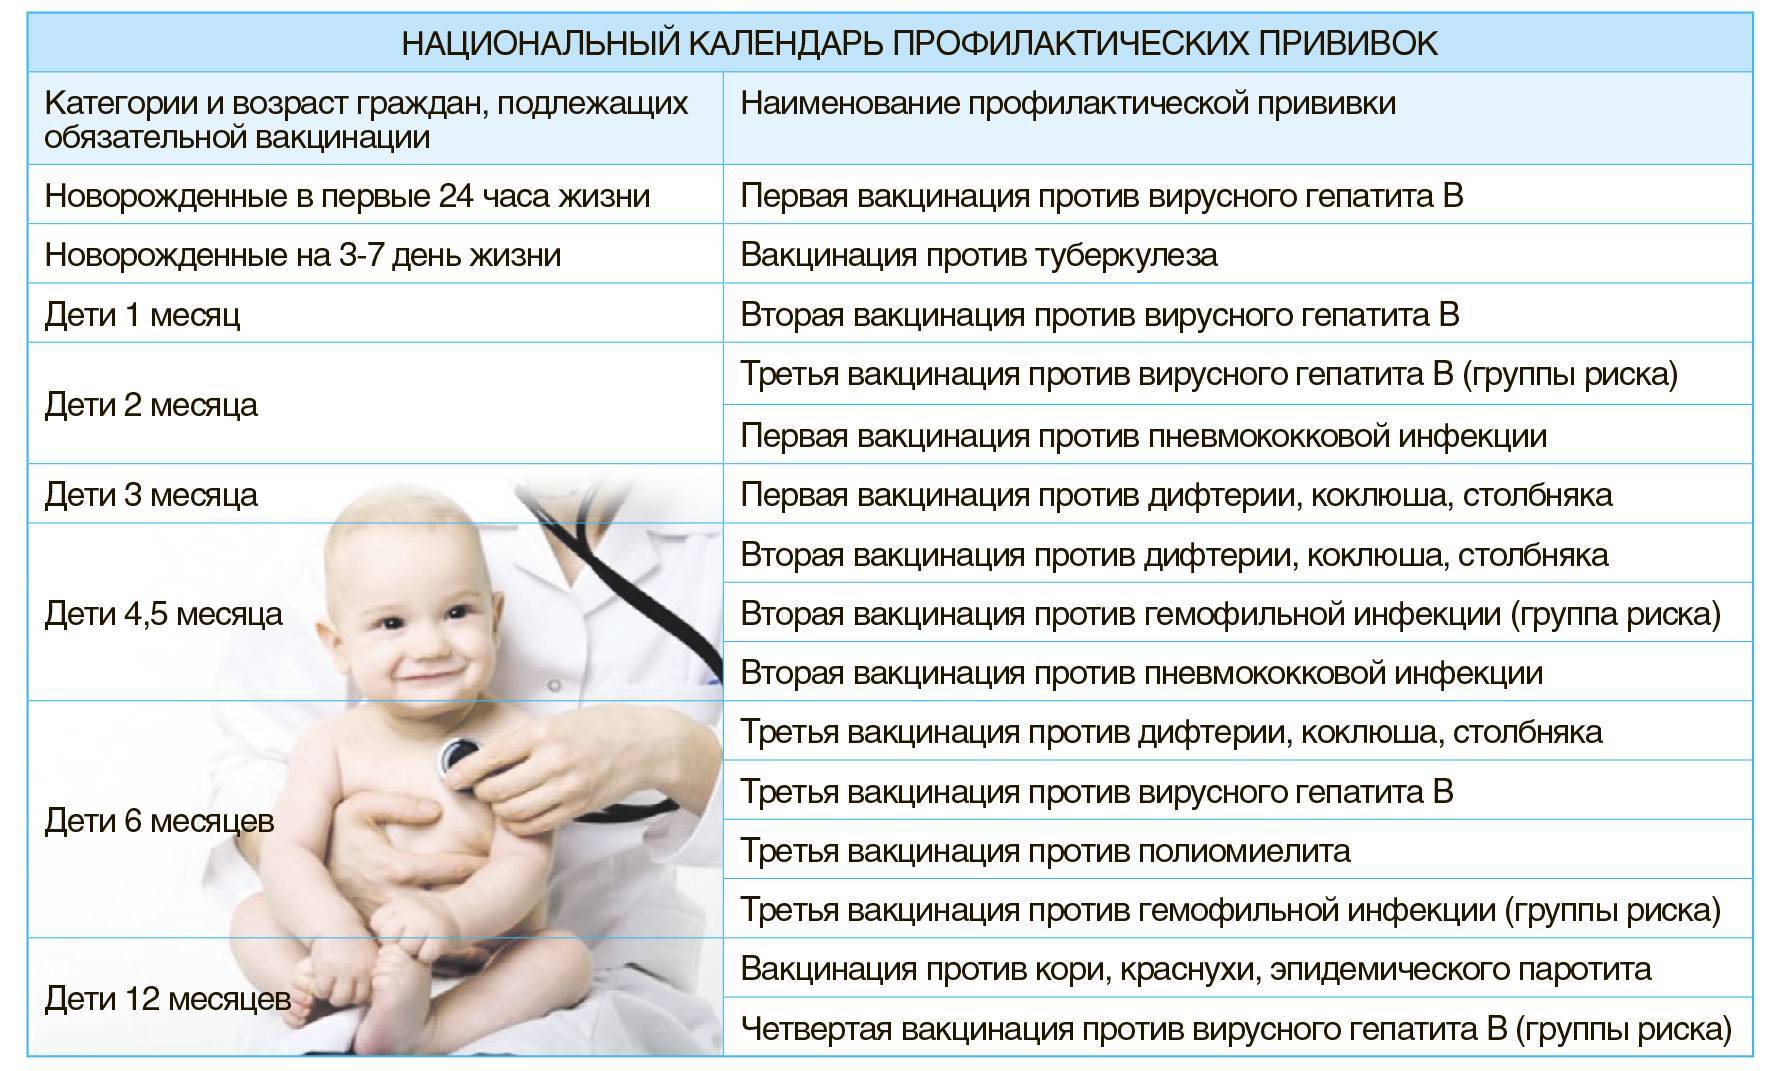 Вакцинация против туберкулеза: прививочный день у новорожденных, приказ о проведении ревакцинации в роддоме